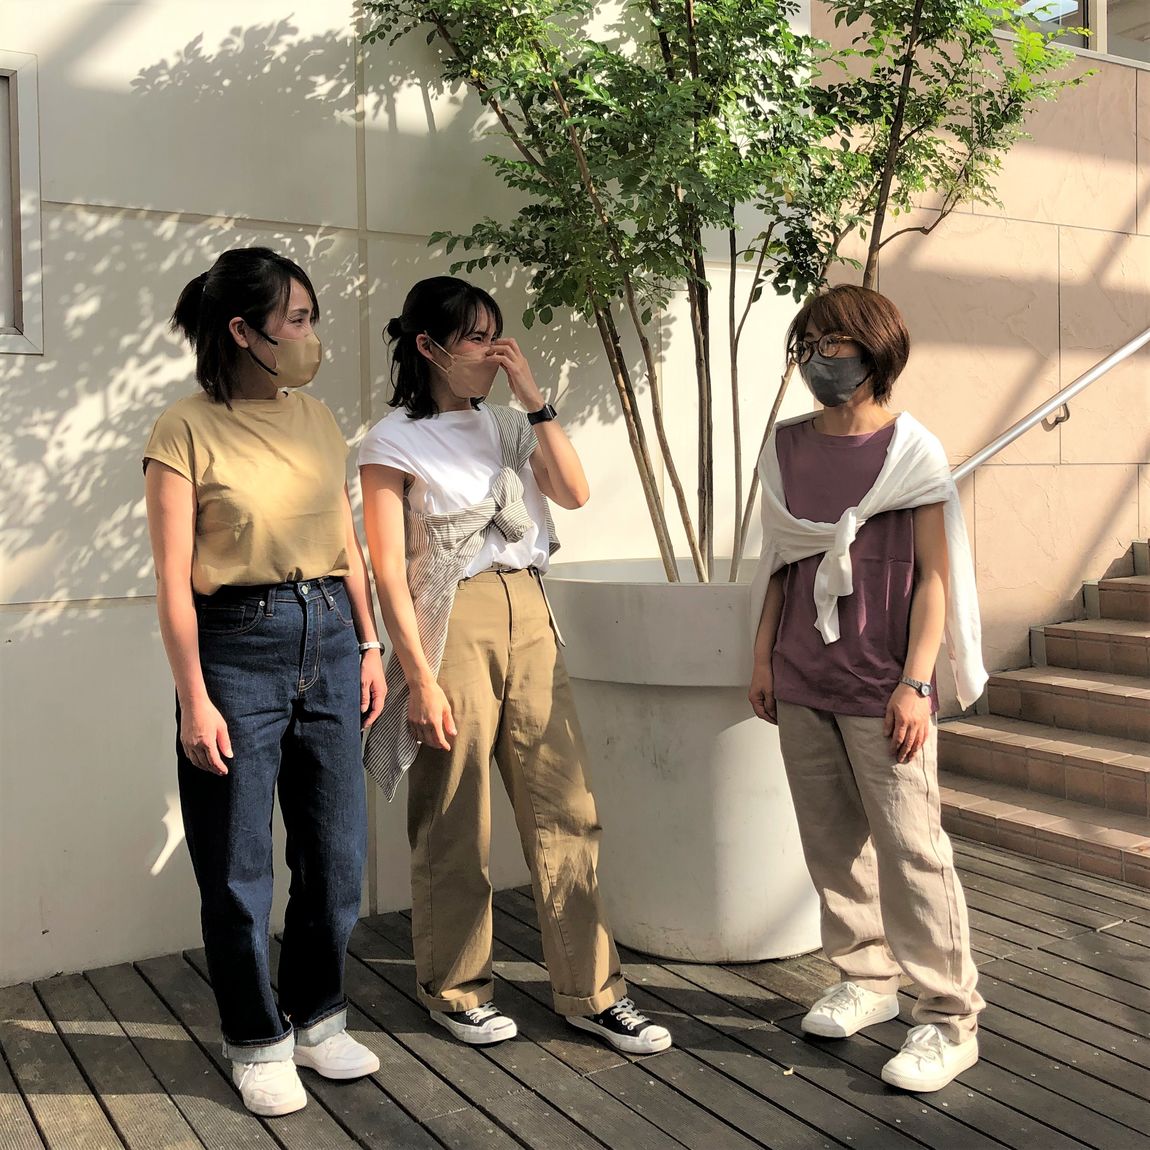 ３人の女性スタッフがフレンチスリーブTシャツを着用してる様子